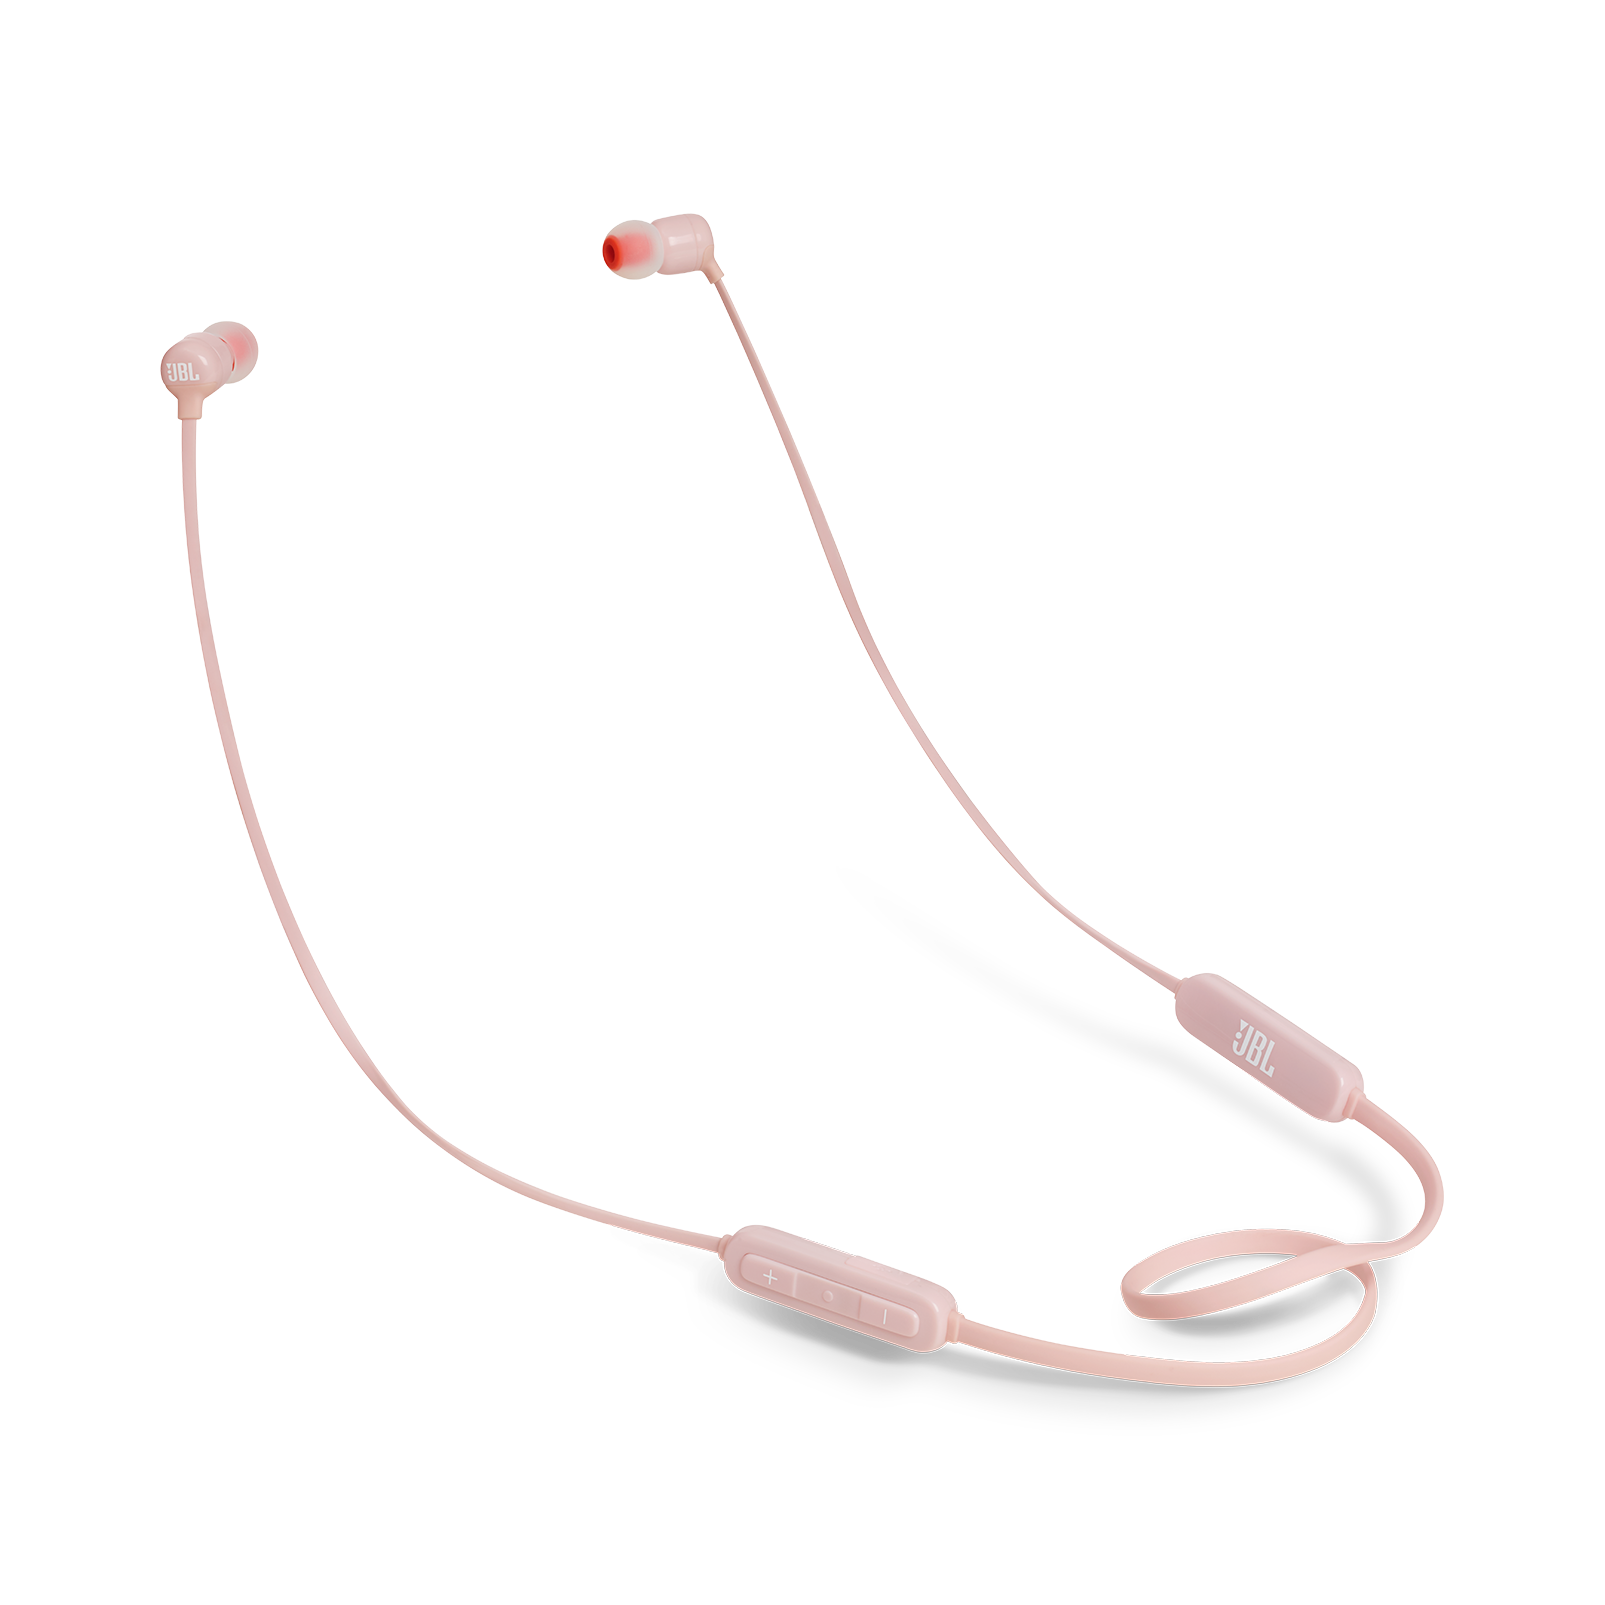 JBL Tune 110BT - Pink - Wireless in-ear headphones - Hero